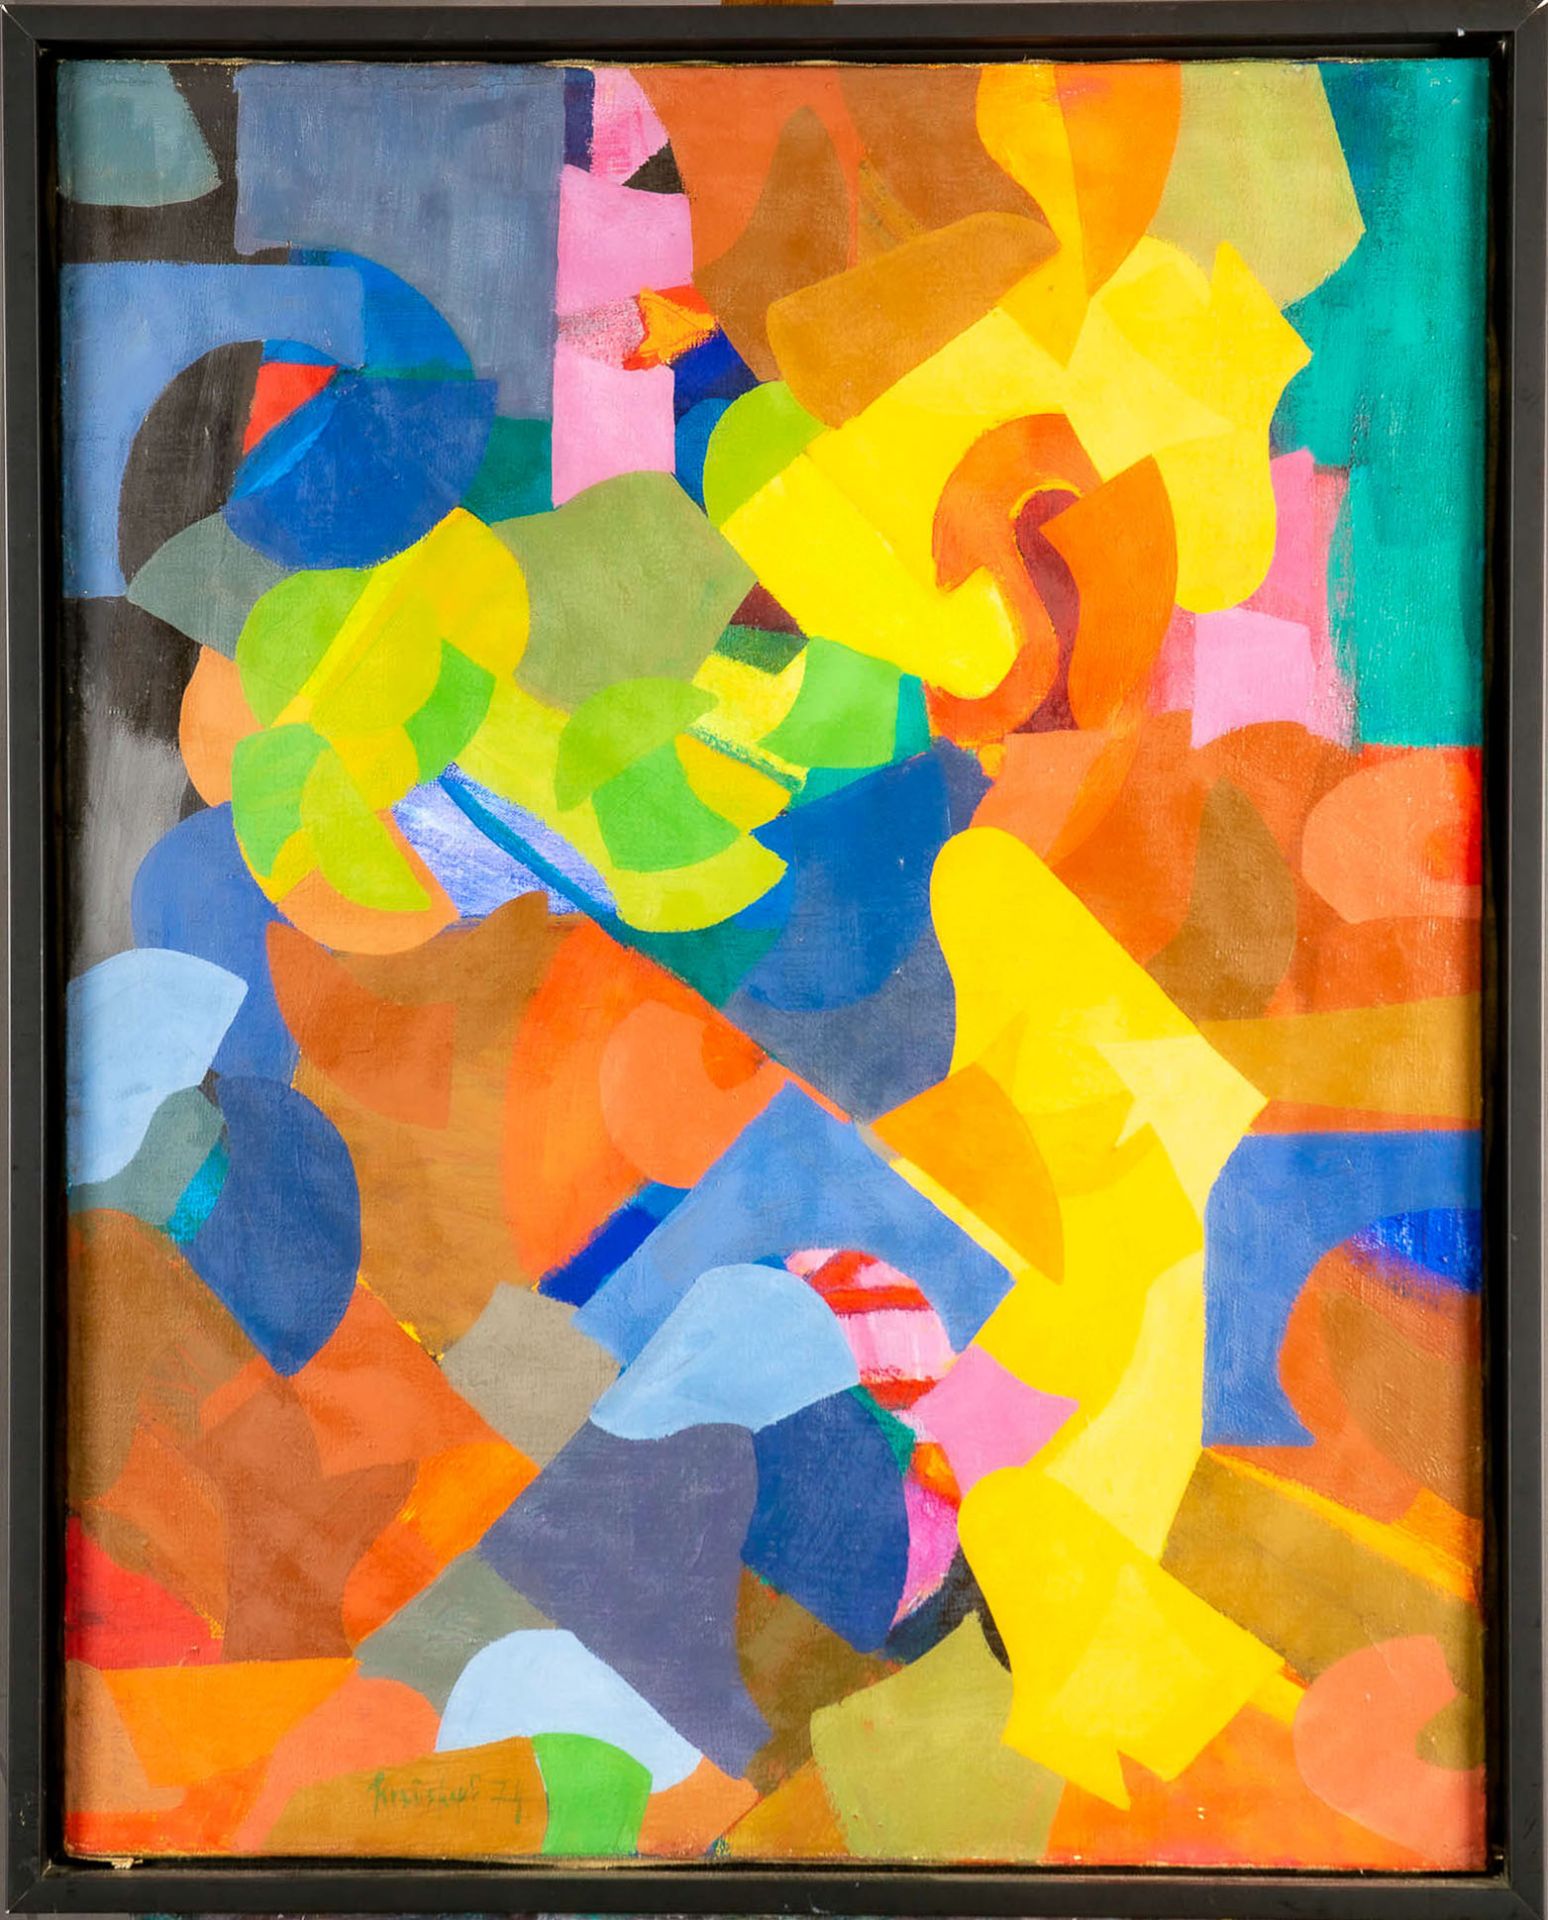 Farbkomposition, Öl auf Leinwand, von Karl-Heinz Krauskopf. Lichtes Innenmaß ca. 99 x 119 cm, Rahme